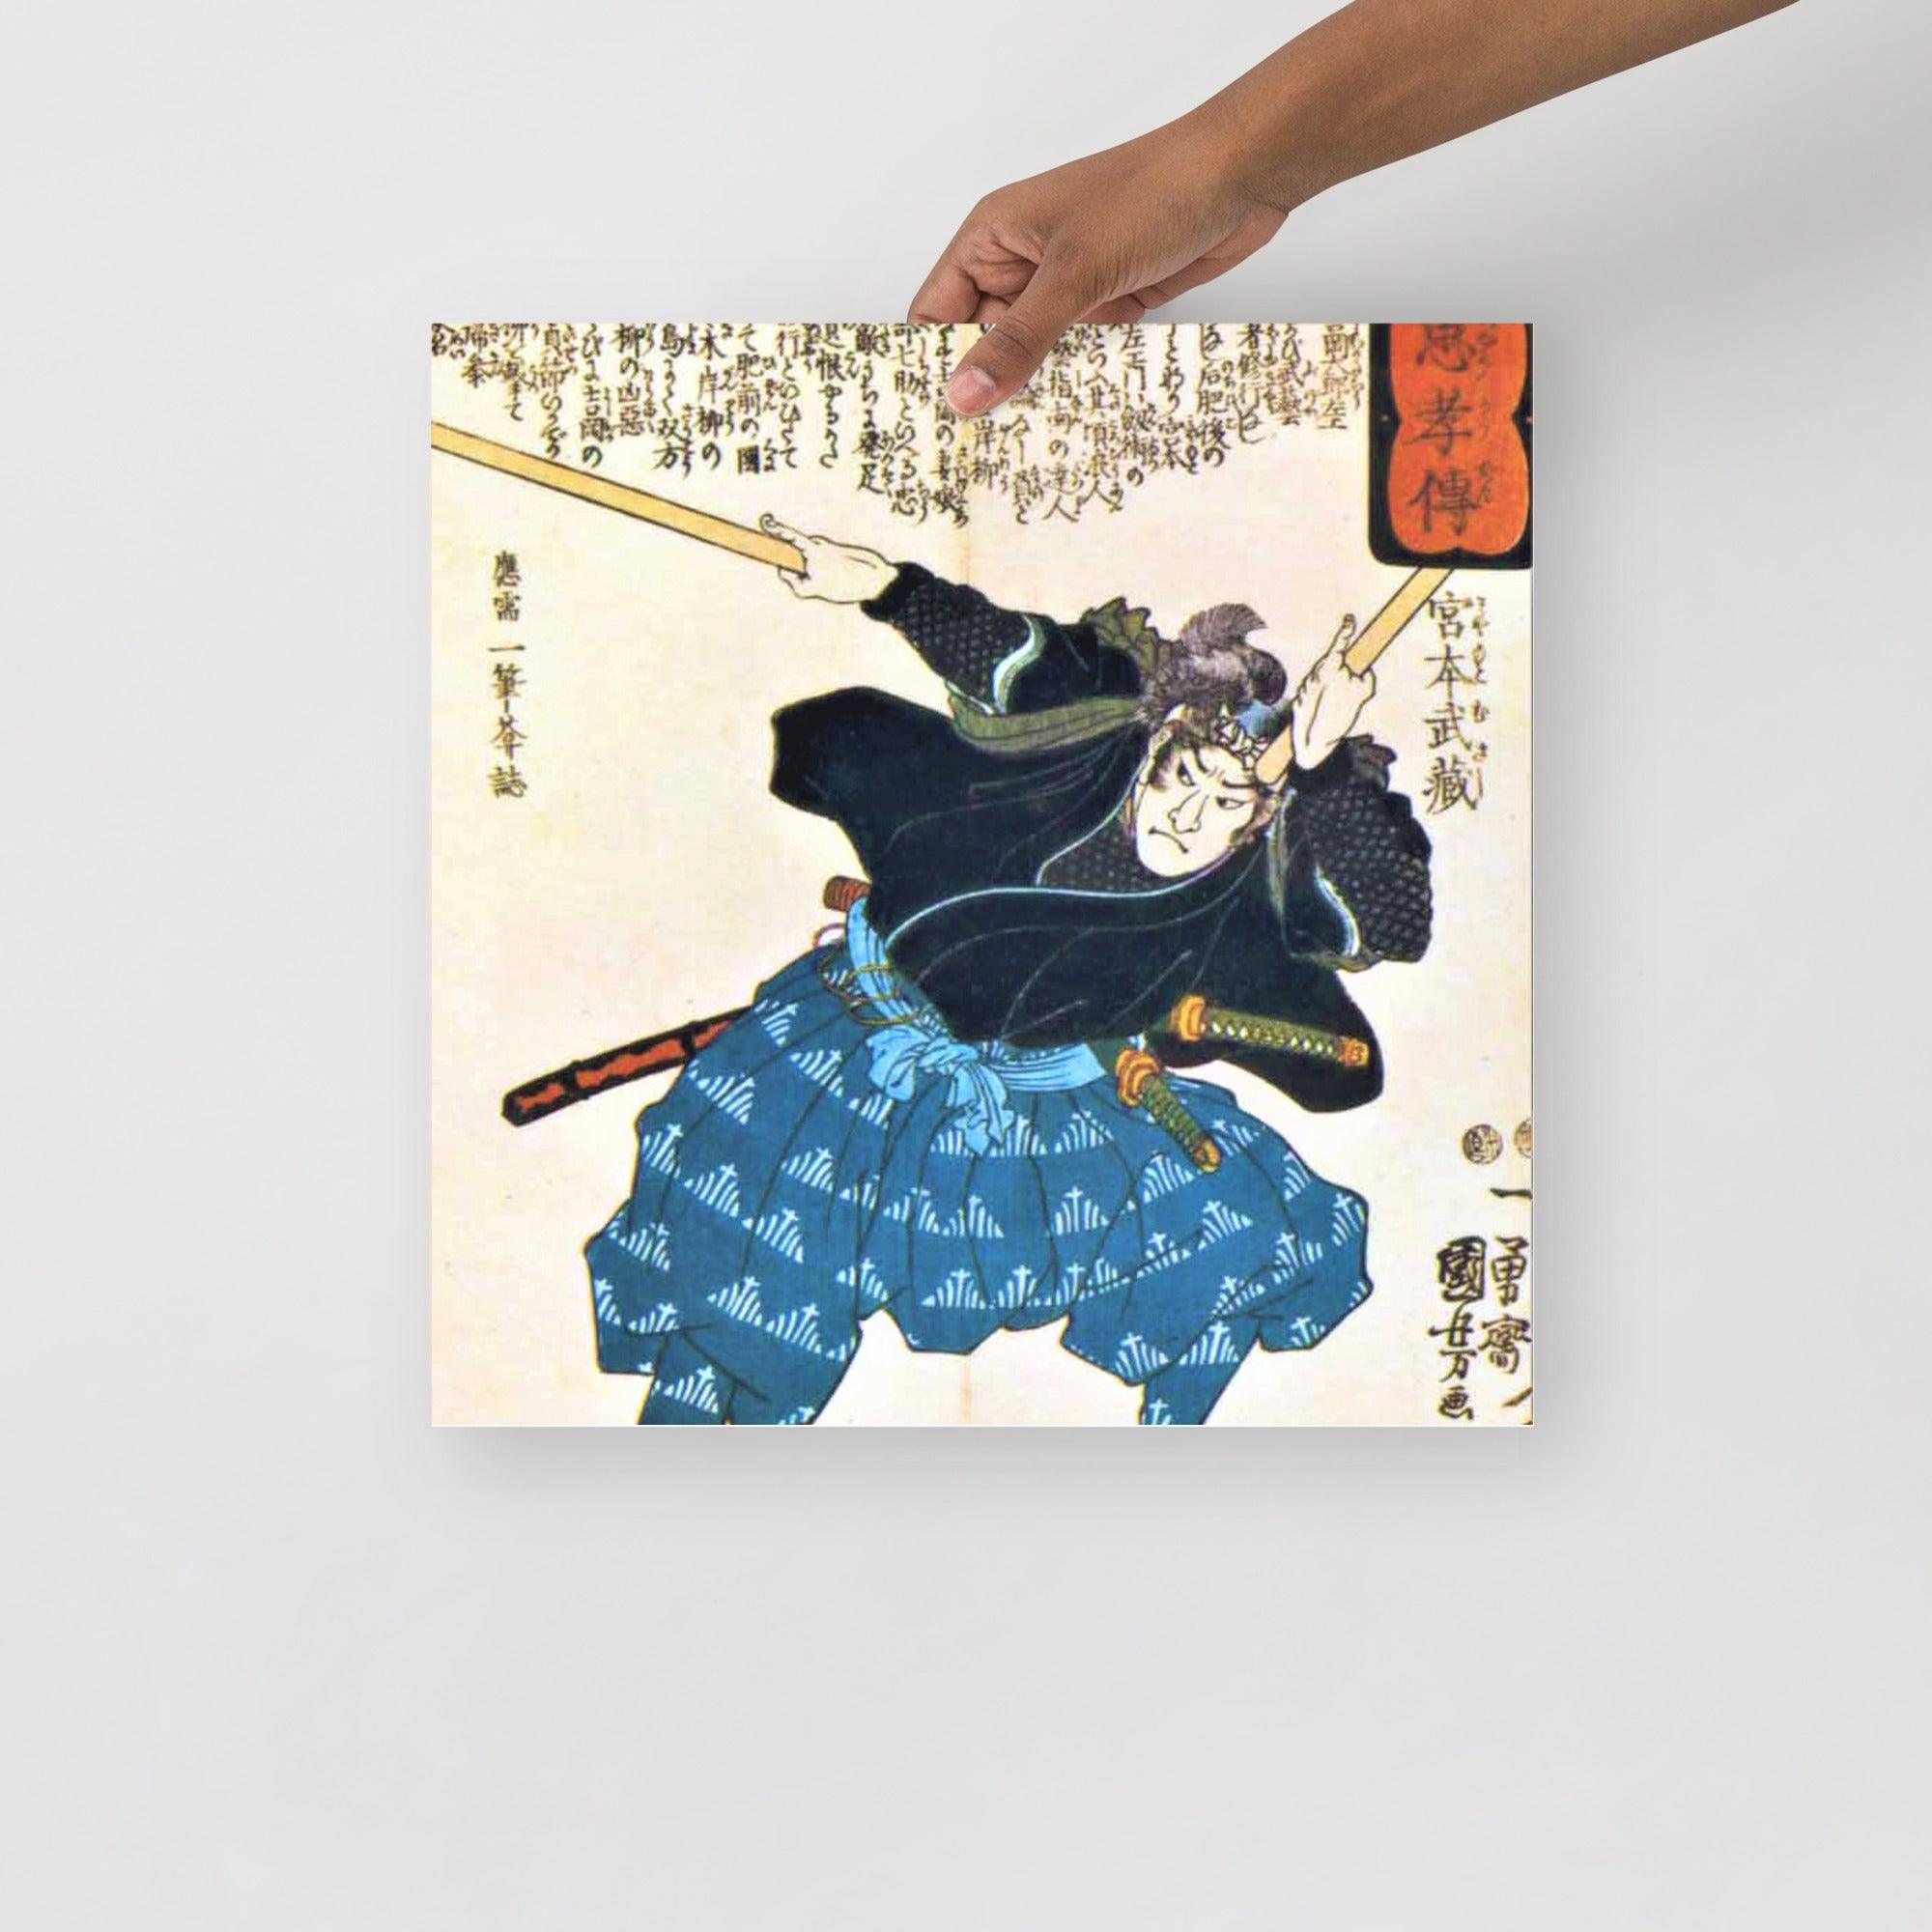 A Miyamoto Musashi by Utagawa Kuniyoshi poster on a plain backdrop in size 16x16”.